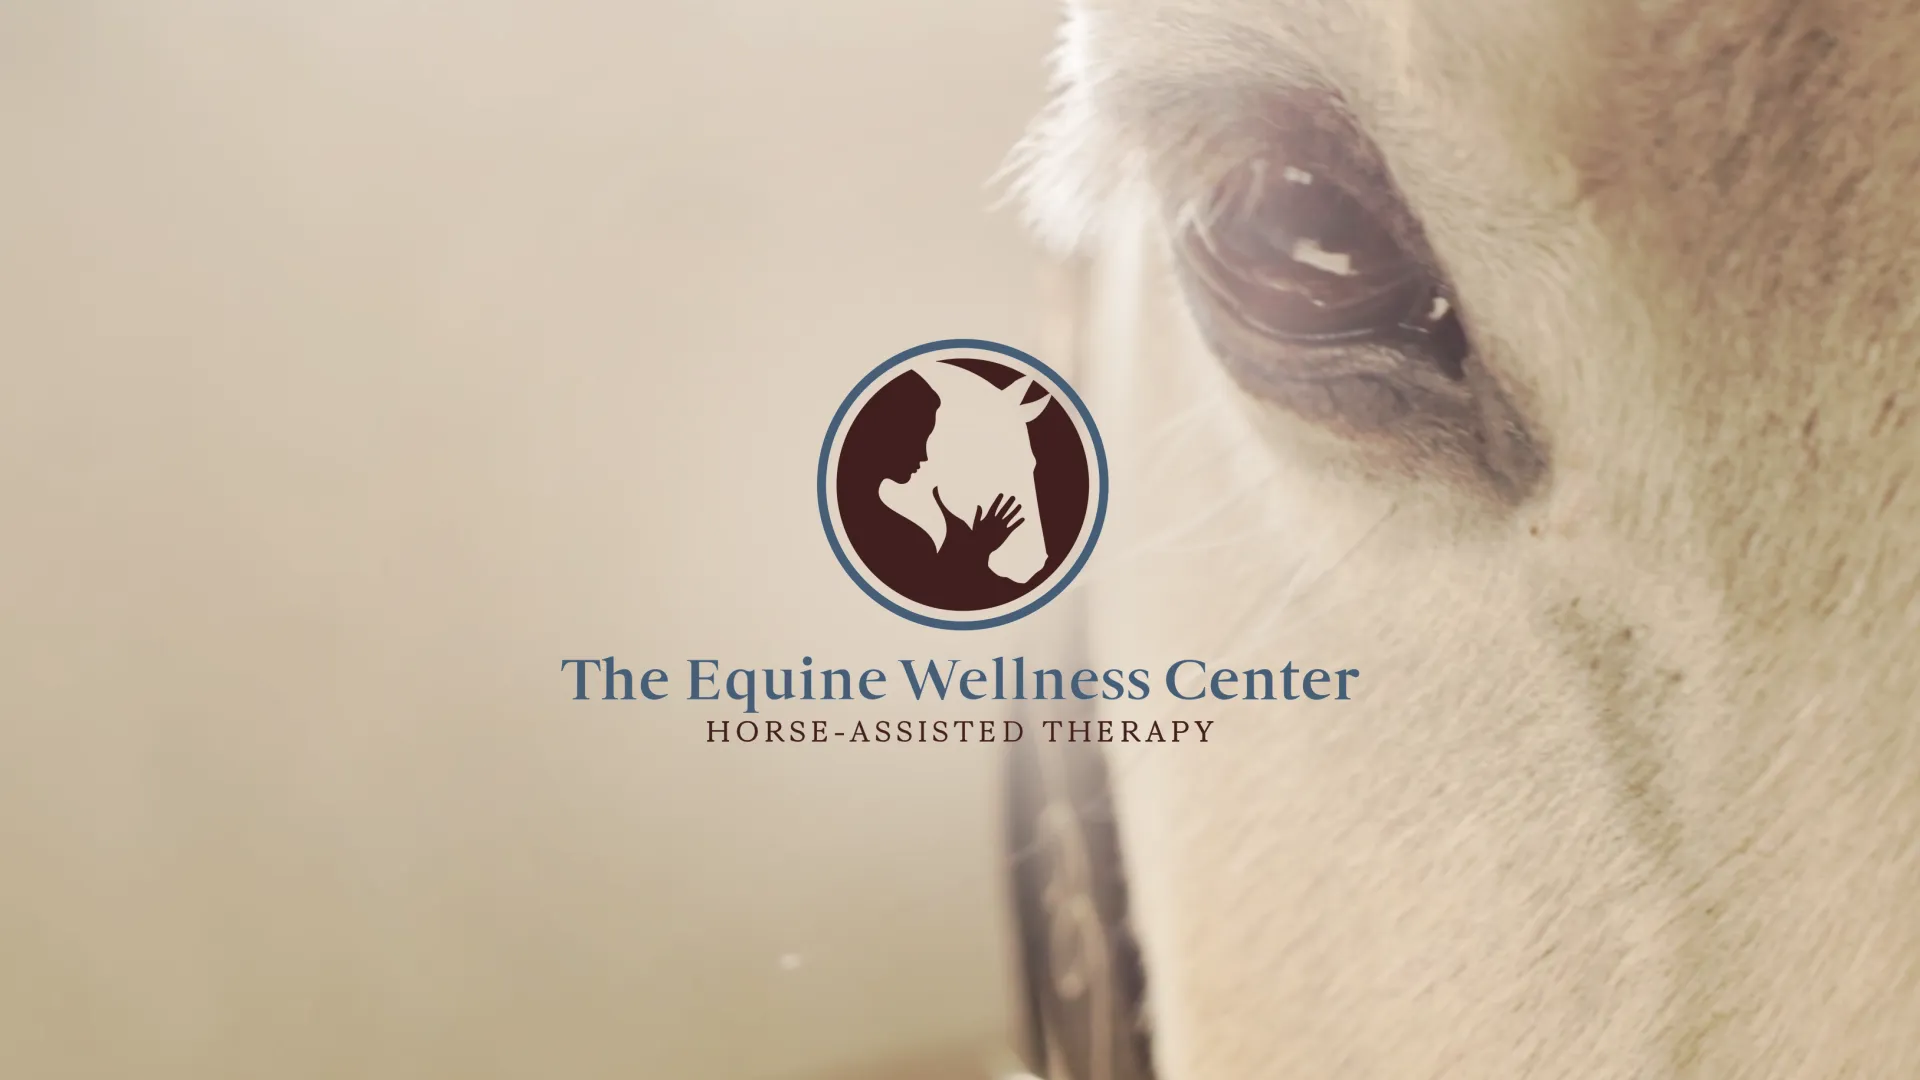 The Equine wellness Center